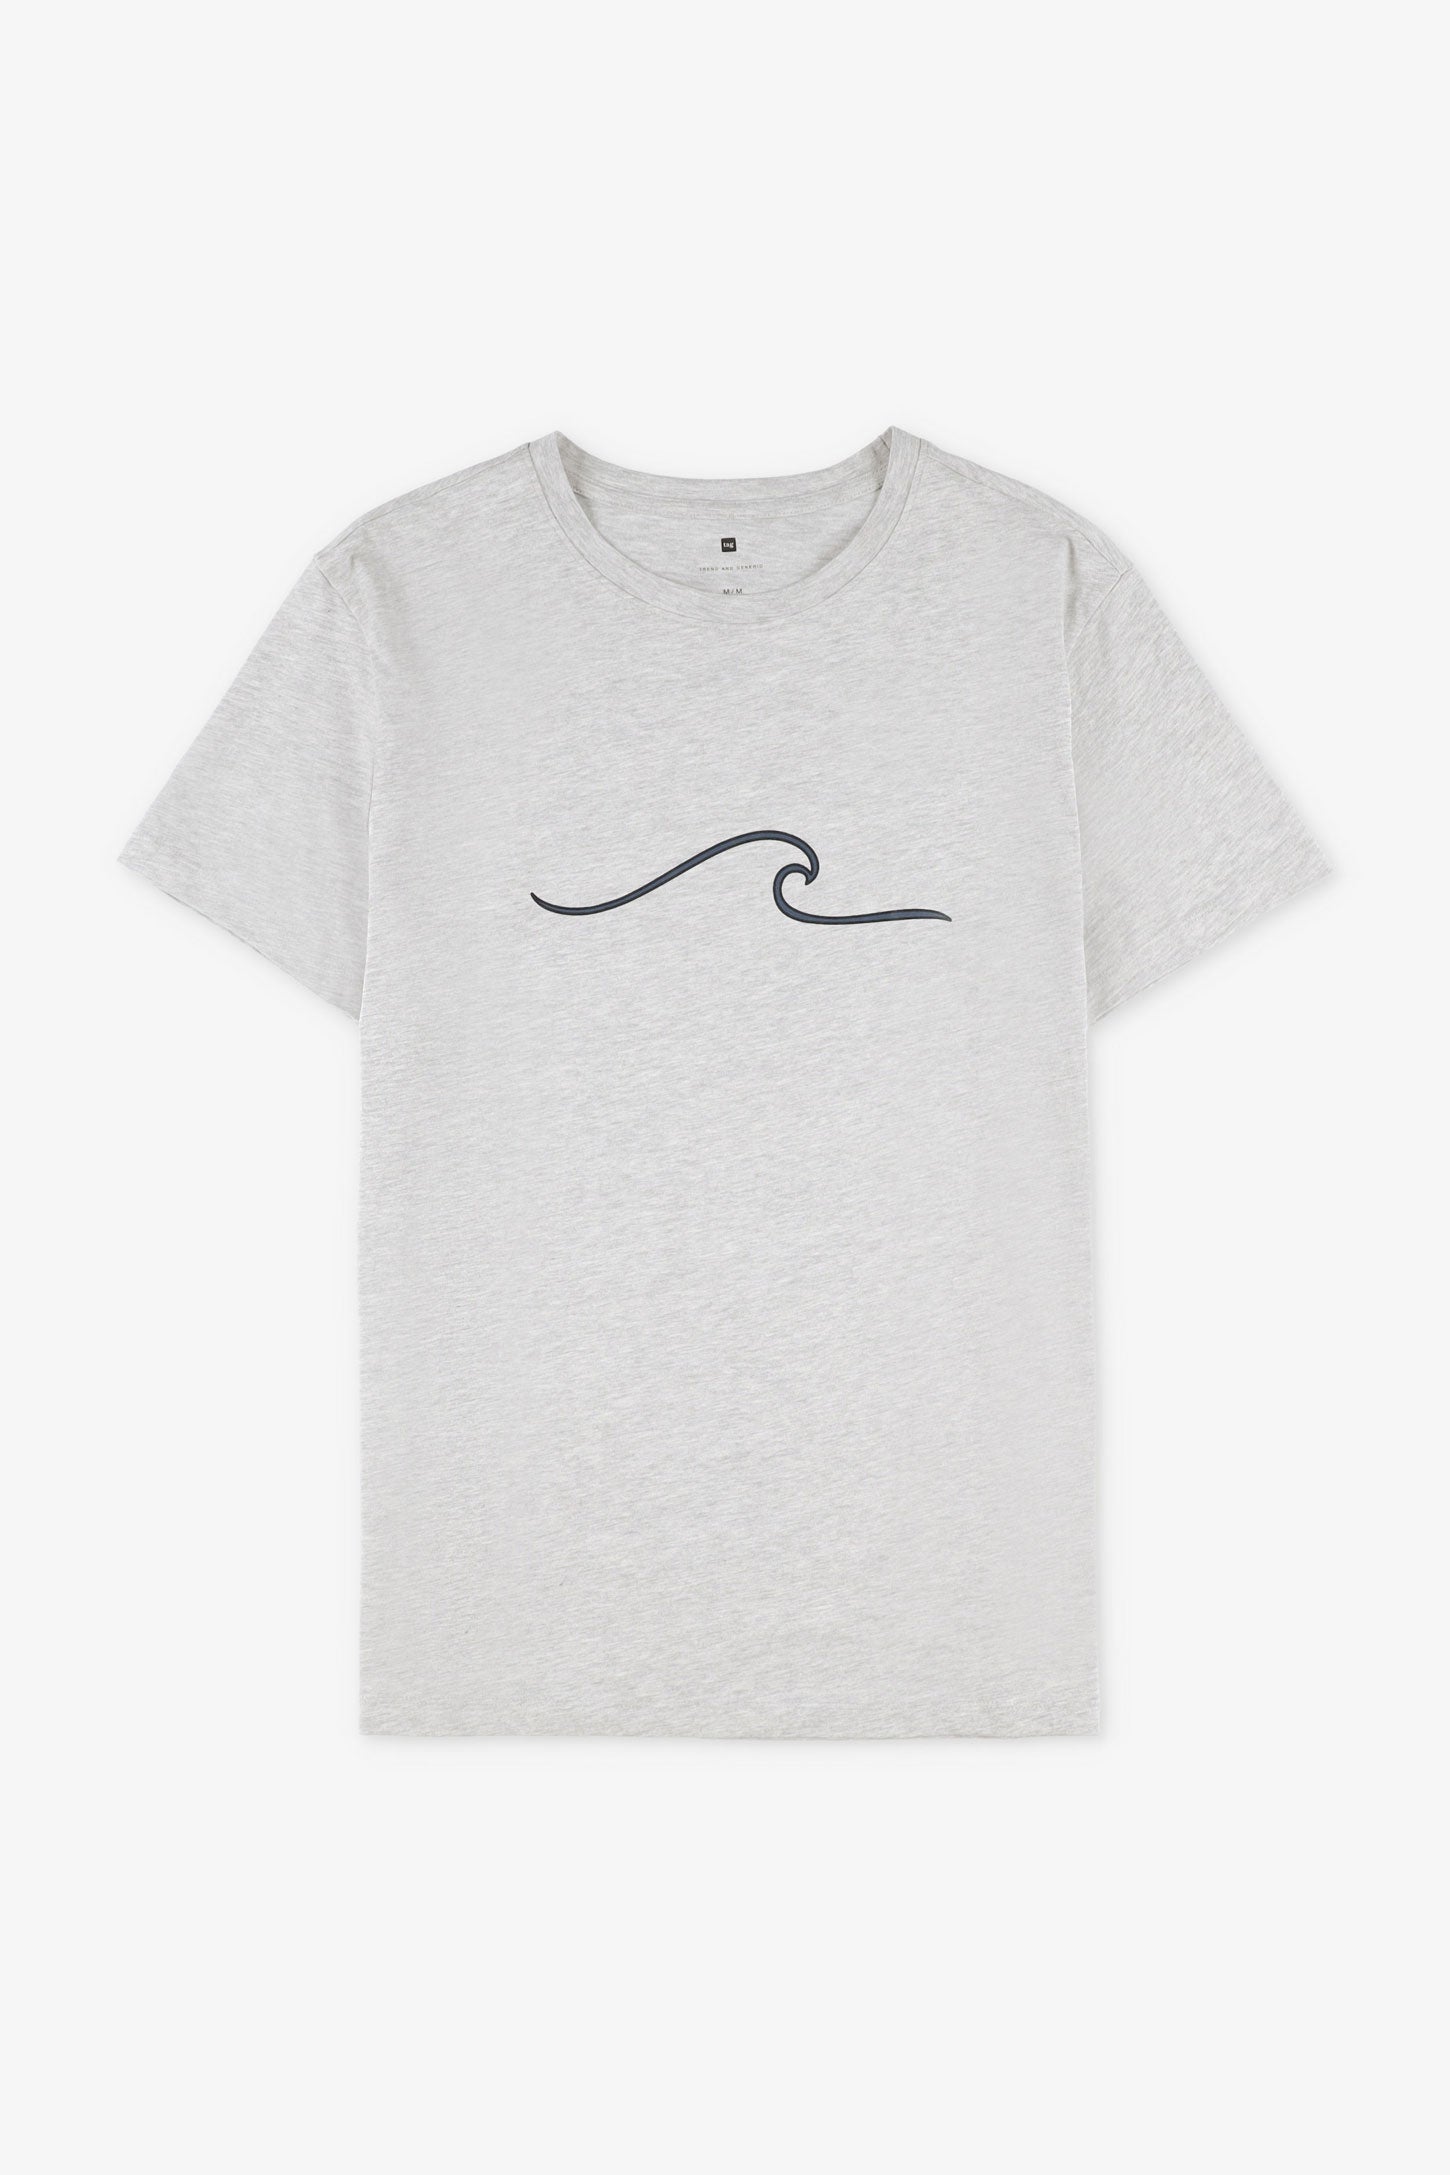 T-shirt pyjama imprimé en coton, 2/40$ - Homme && GRIS MIXTE